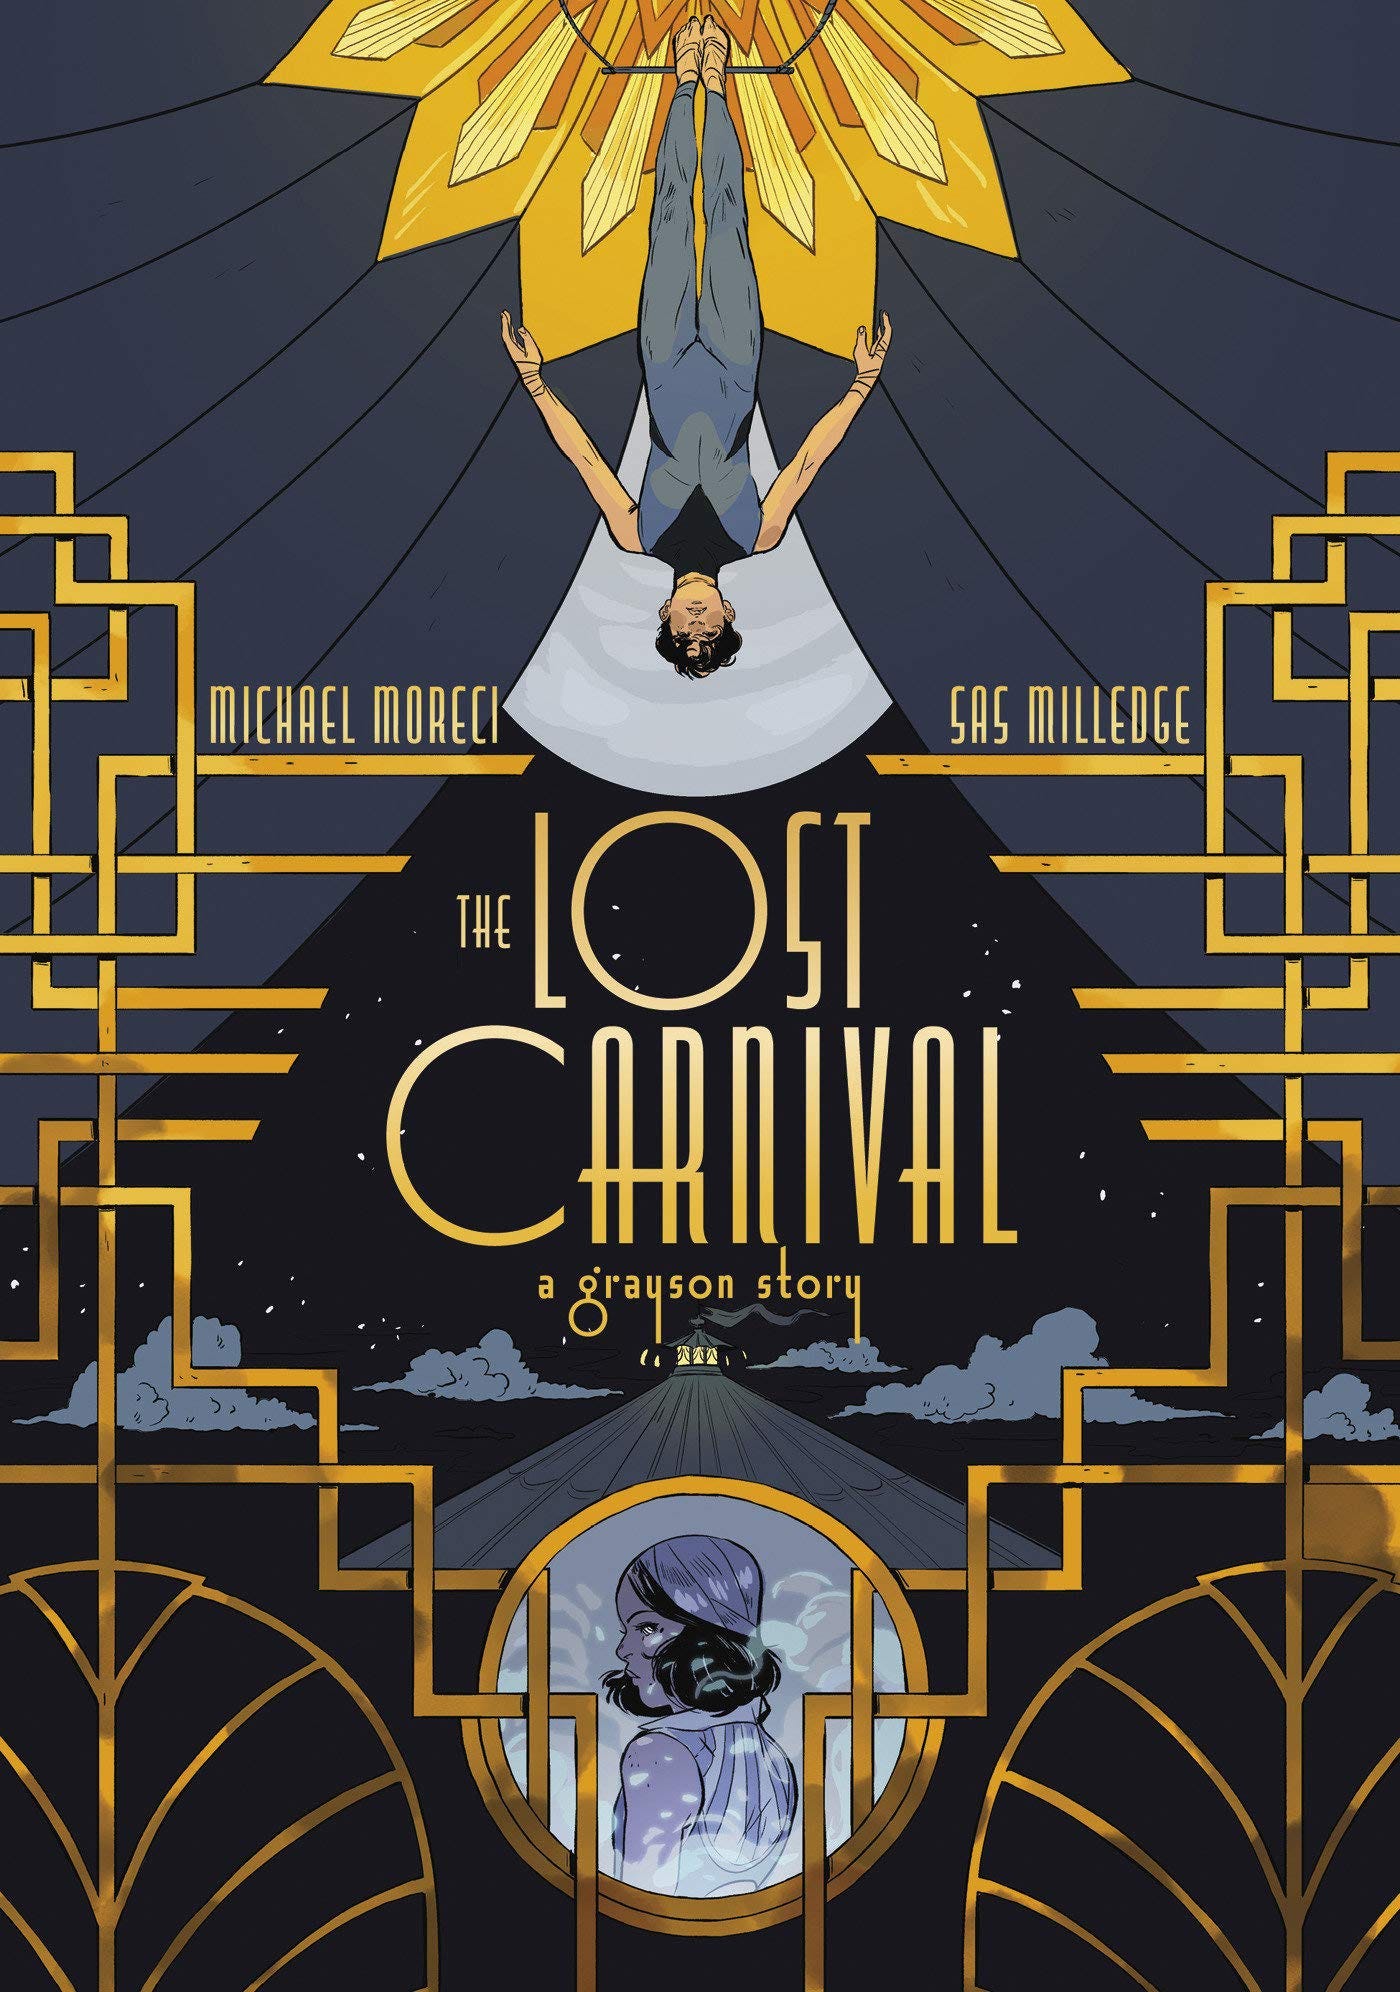 Amazon.com: The Lost Carnival: A Dick Grayson Graphic Novel  (9781401291020): Moreci, Michael, Milledge, Sas: Books